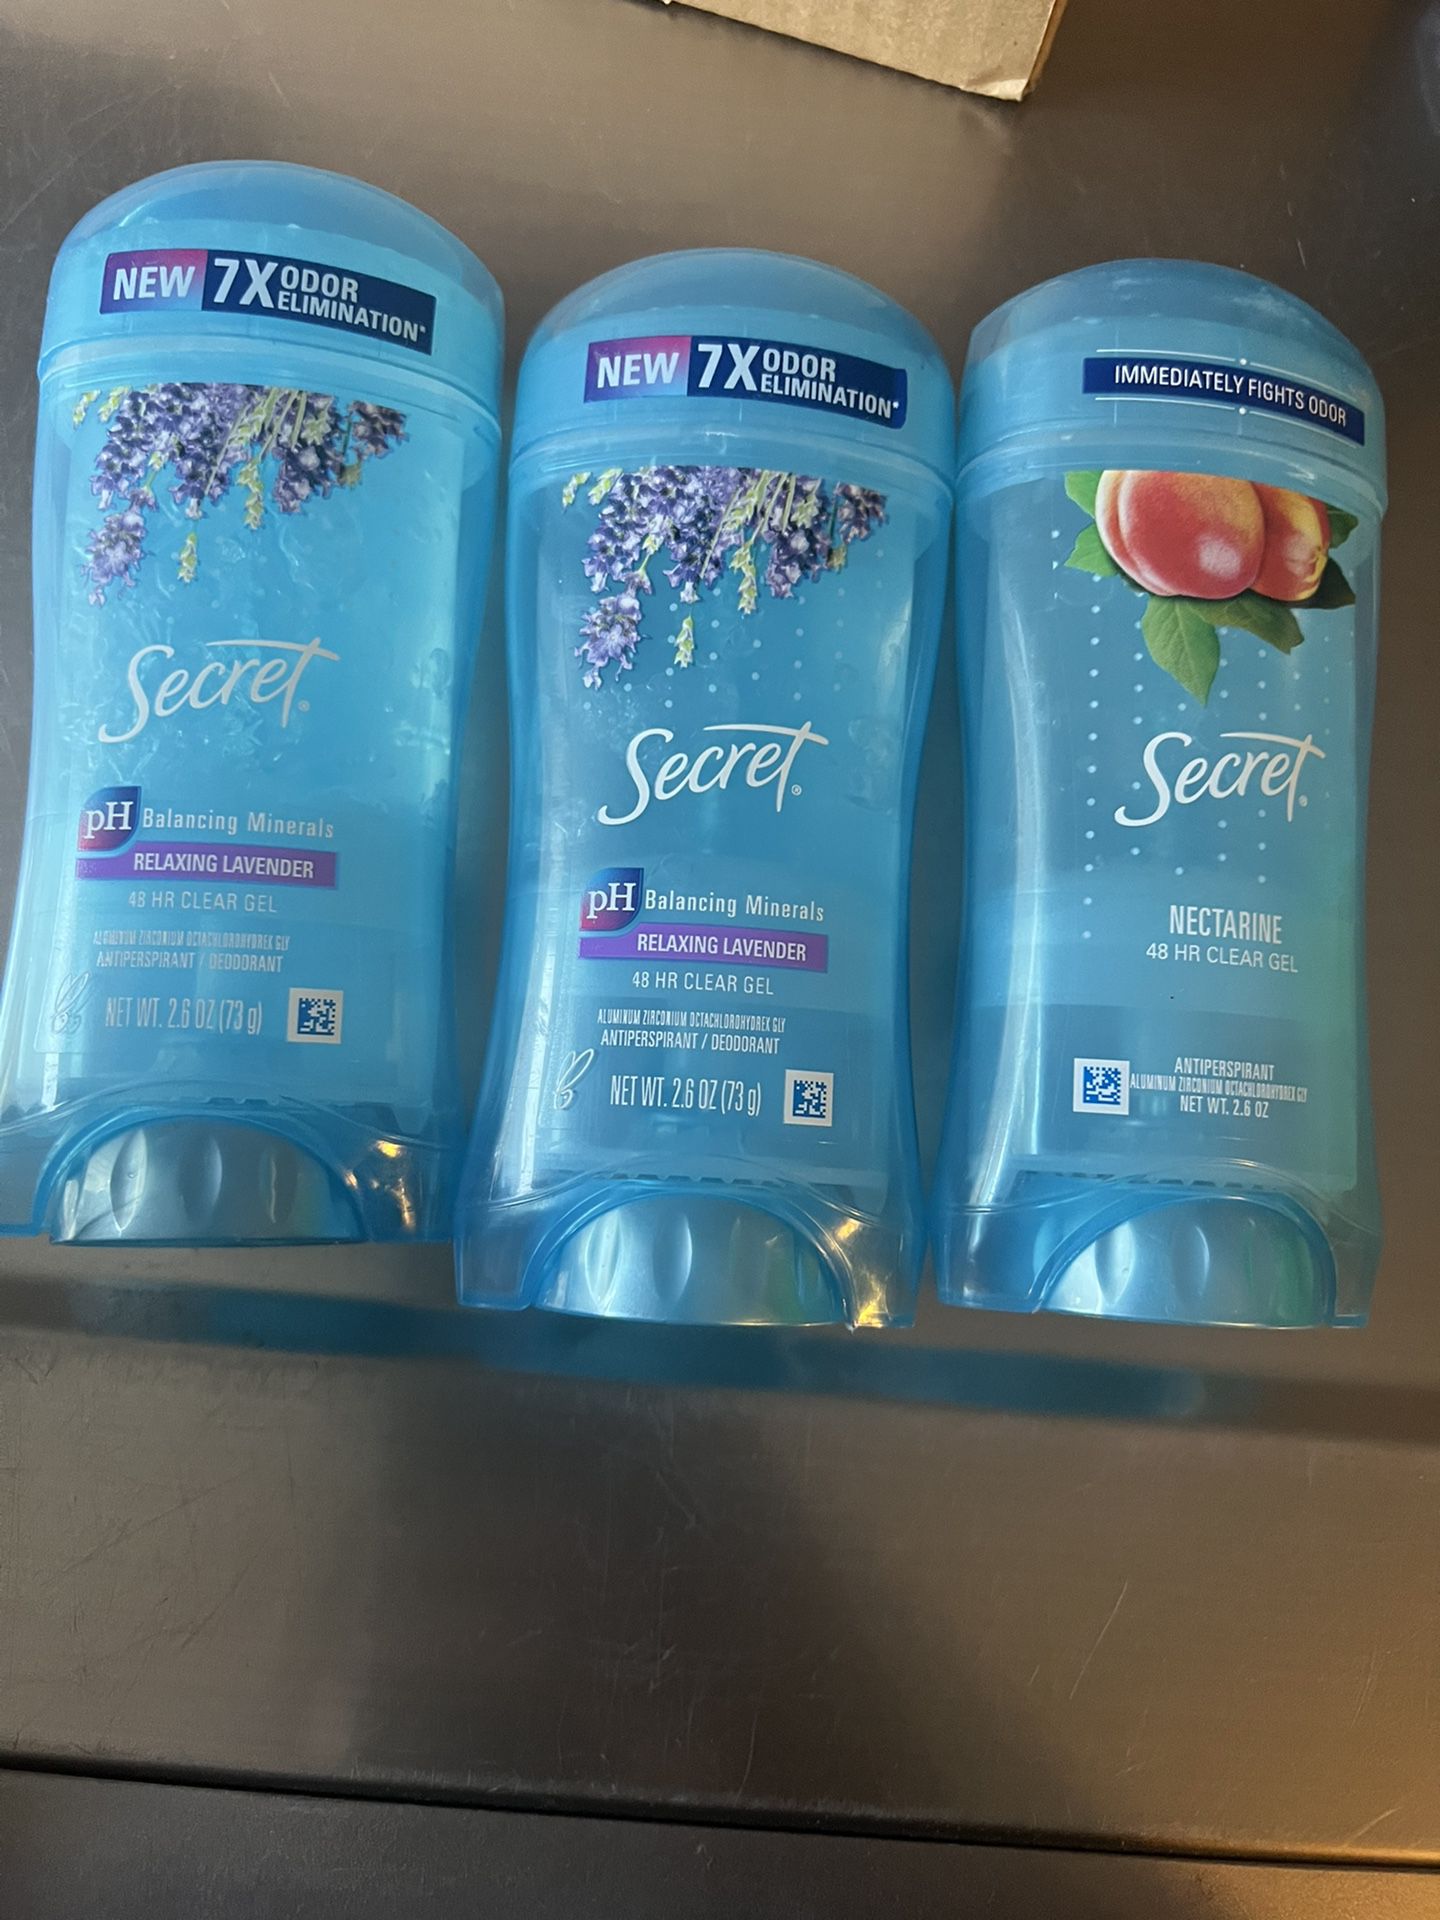 Secret Deodorant 